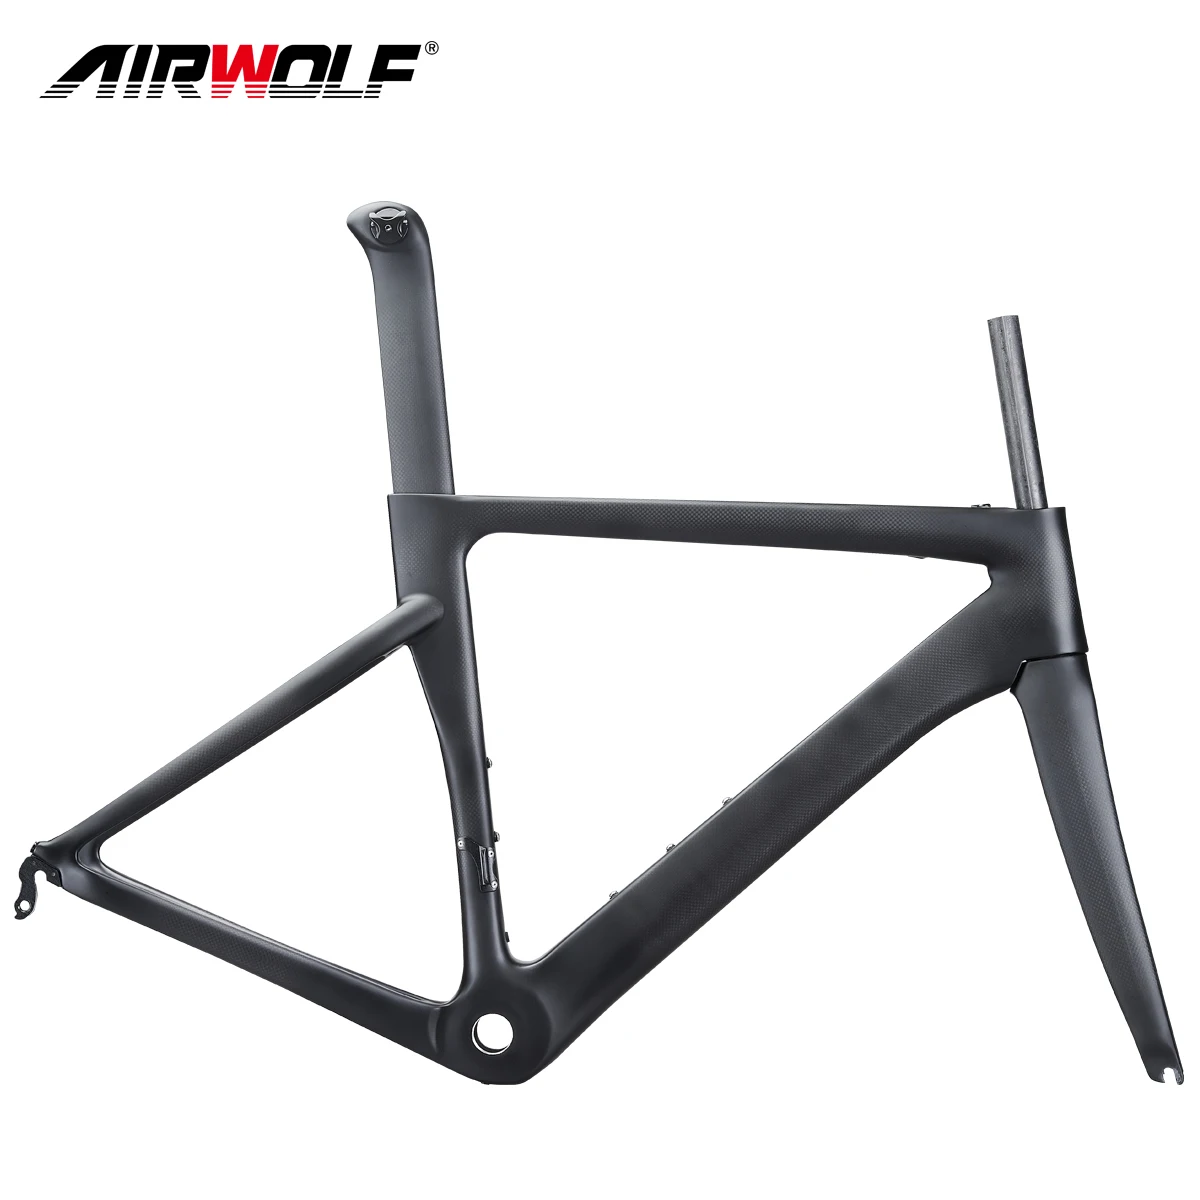 

AIRWOLF Carbon Frame 700C Road Bicycle Frameset Rim Brake V Quick Release 130*9mm BSA Racing Road Bike Frams 48 51 54 56 CM